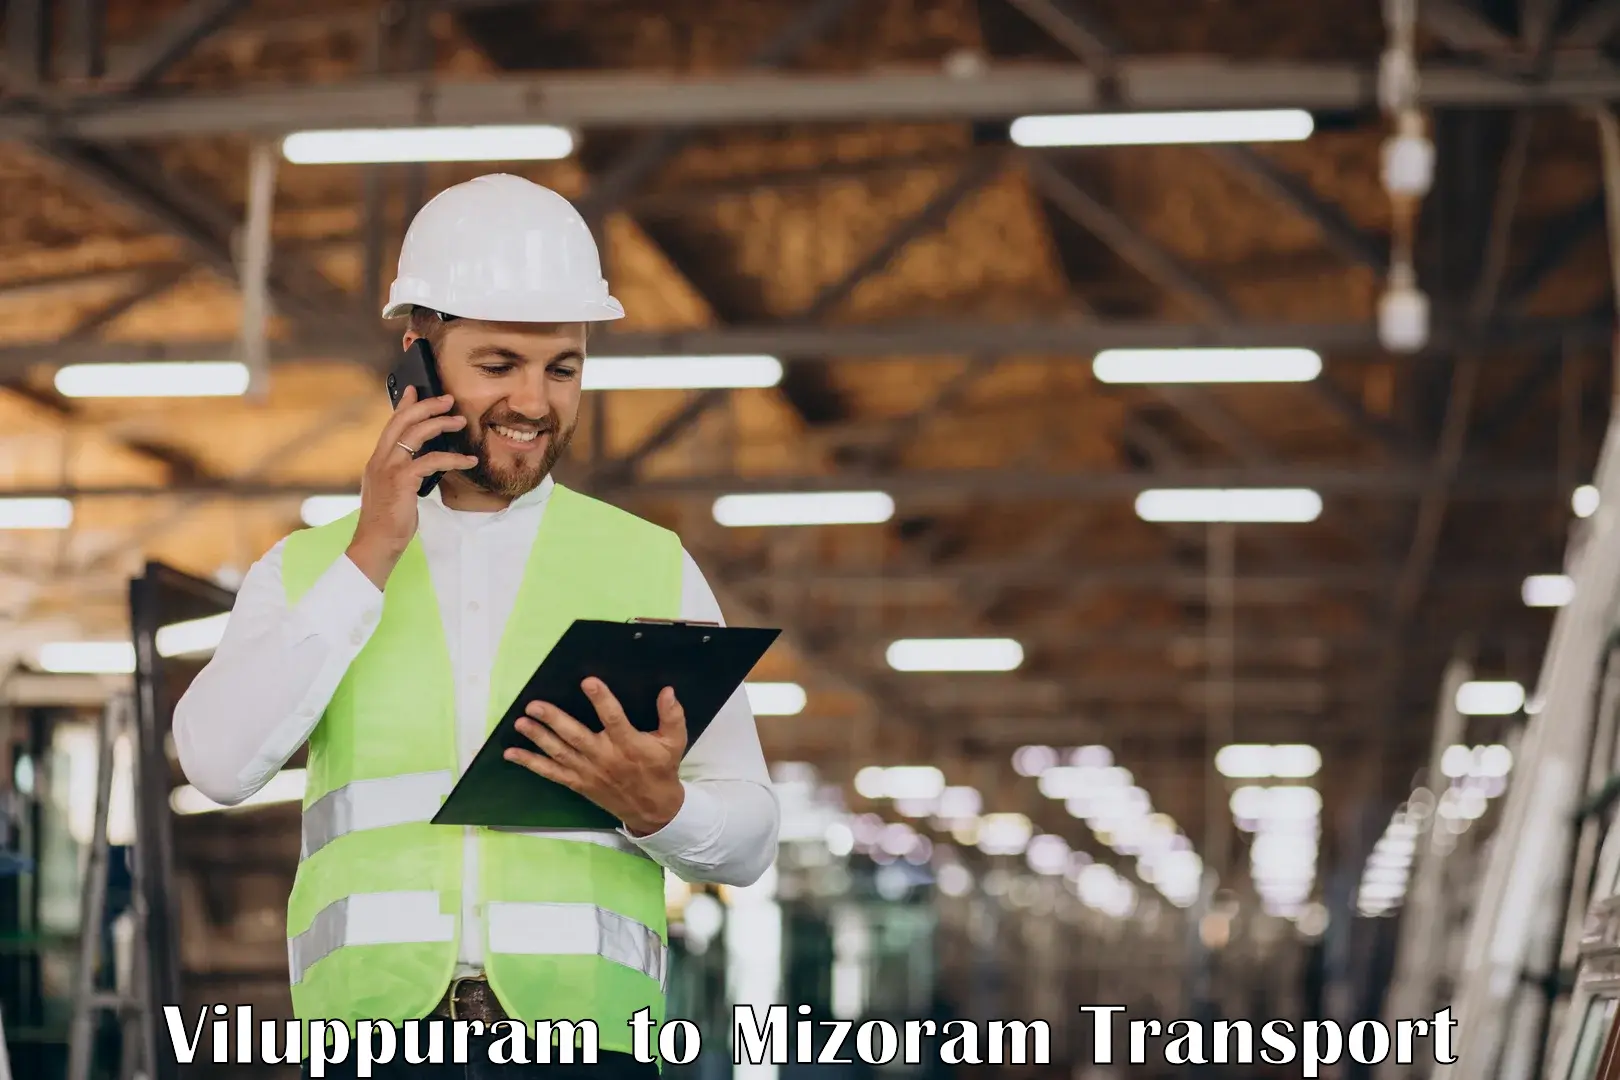 Road transport online services Viluppuram to Darlawn